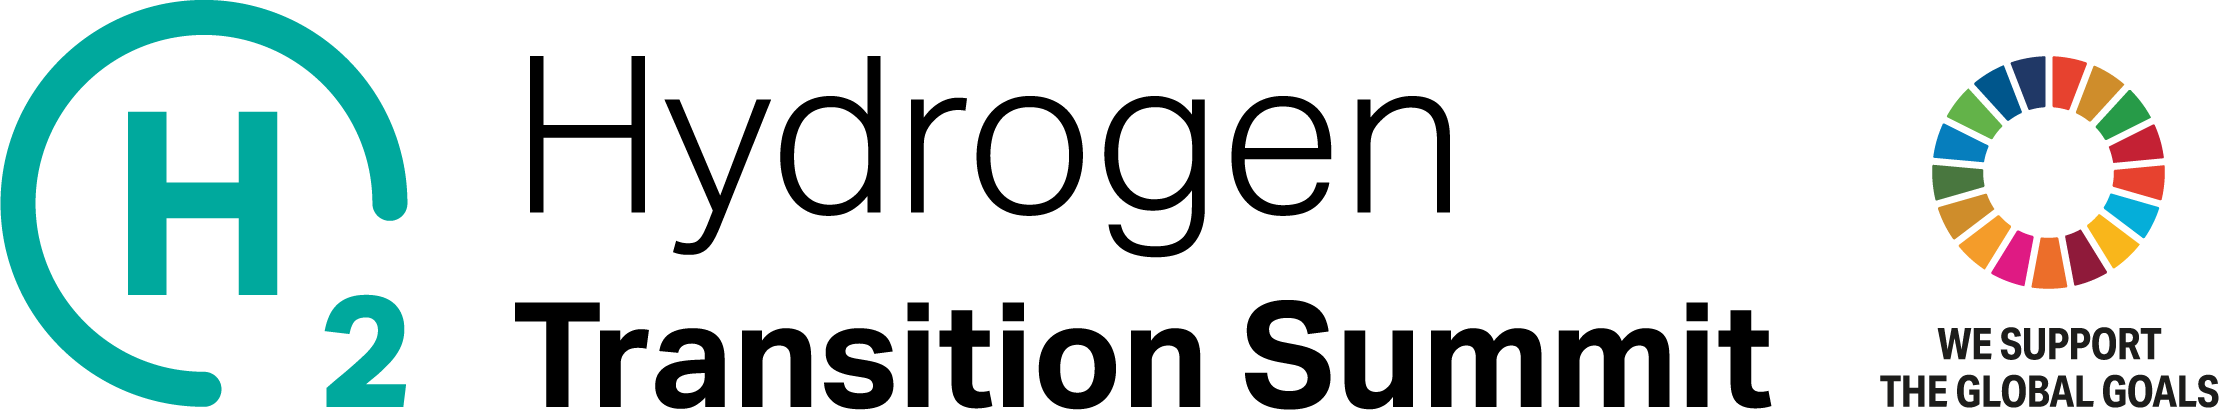 Hydrogren Summit logo